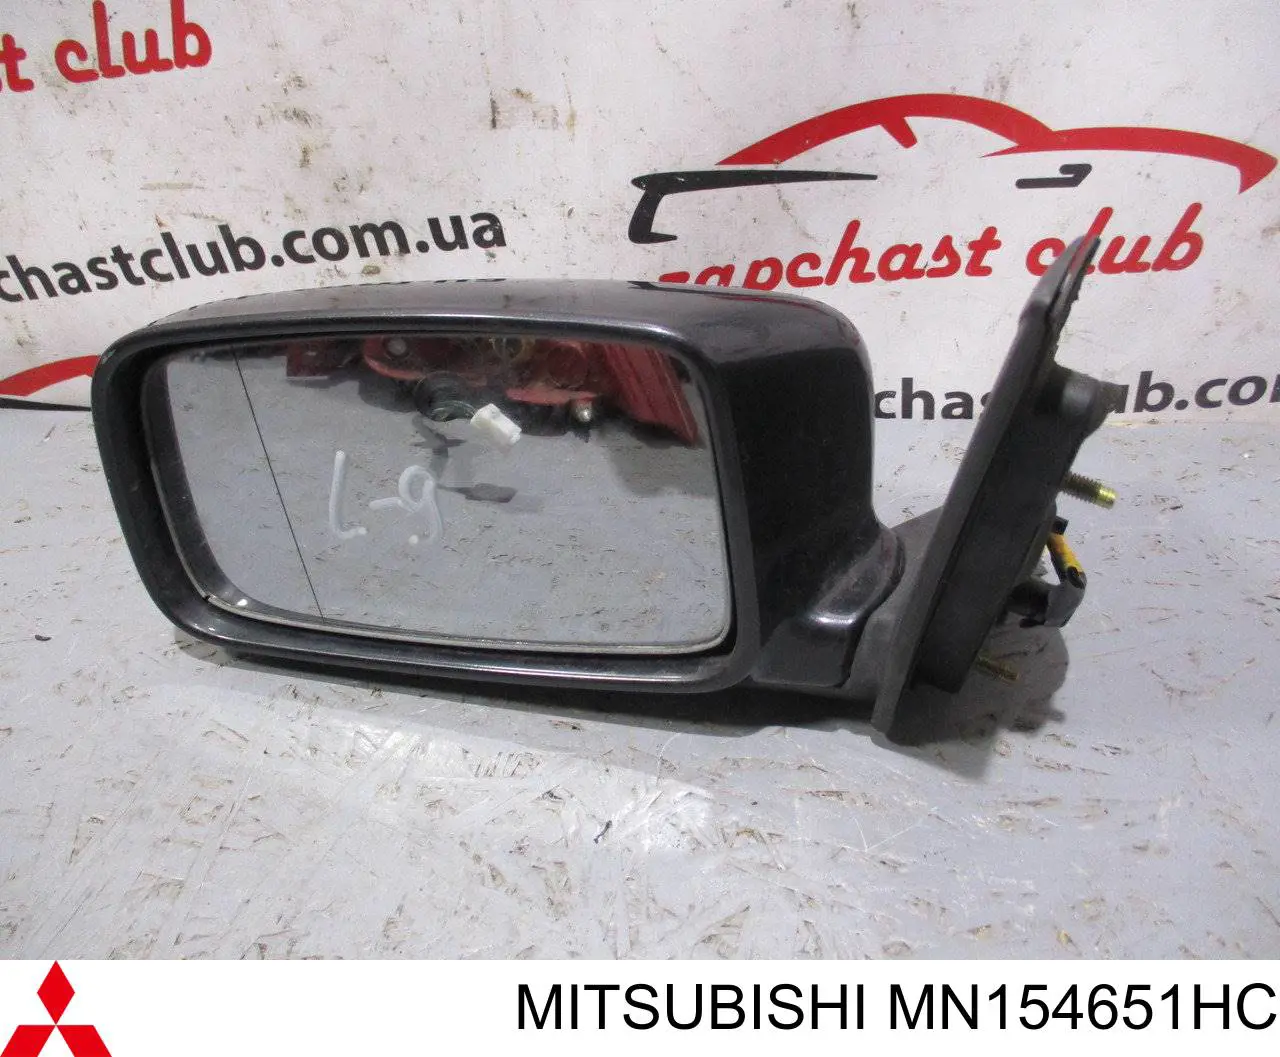 MN154651HC Mitsubishi